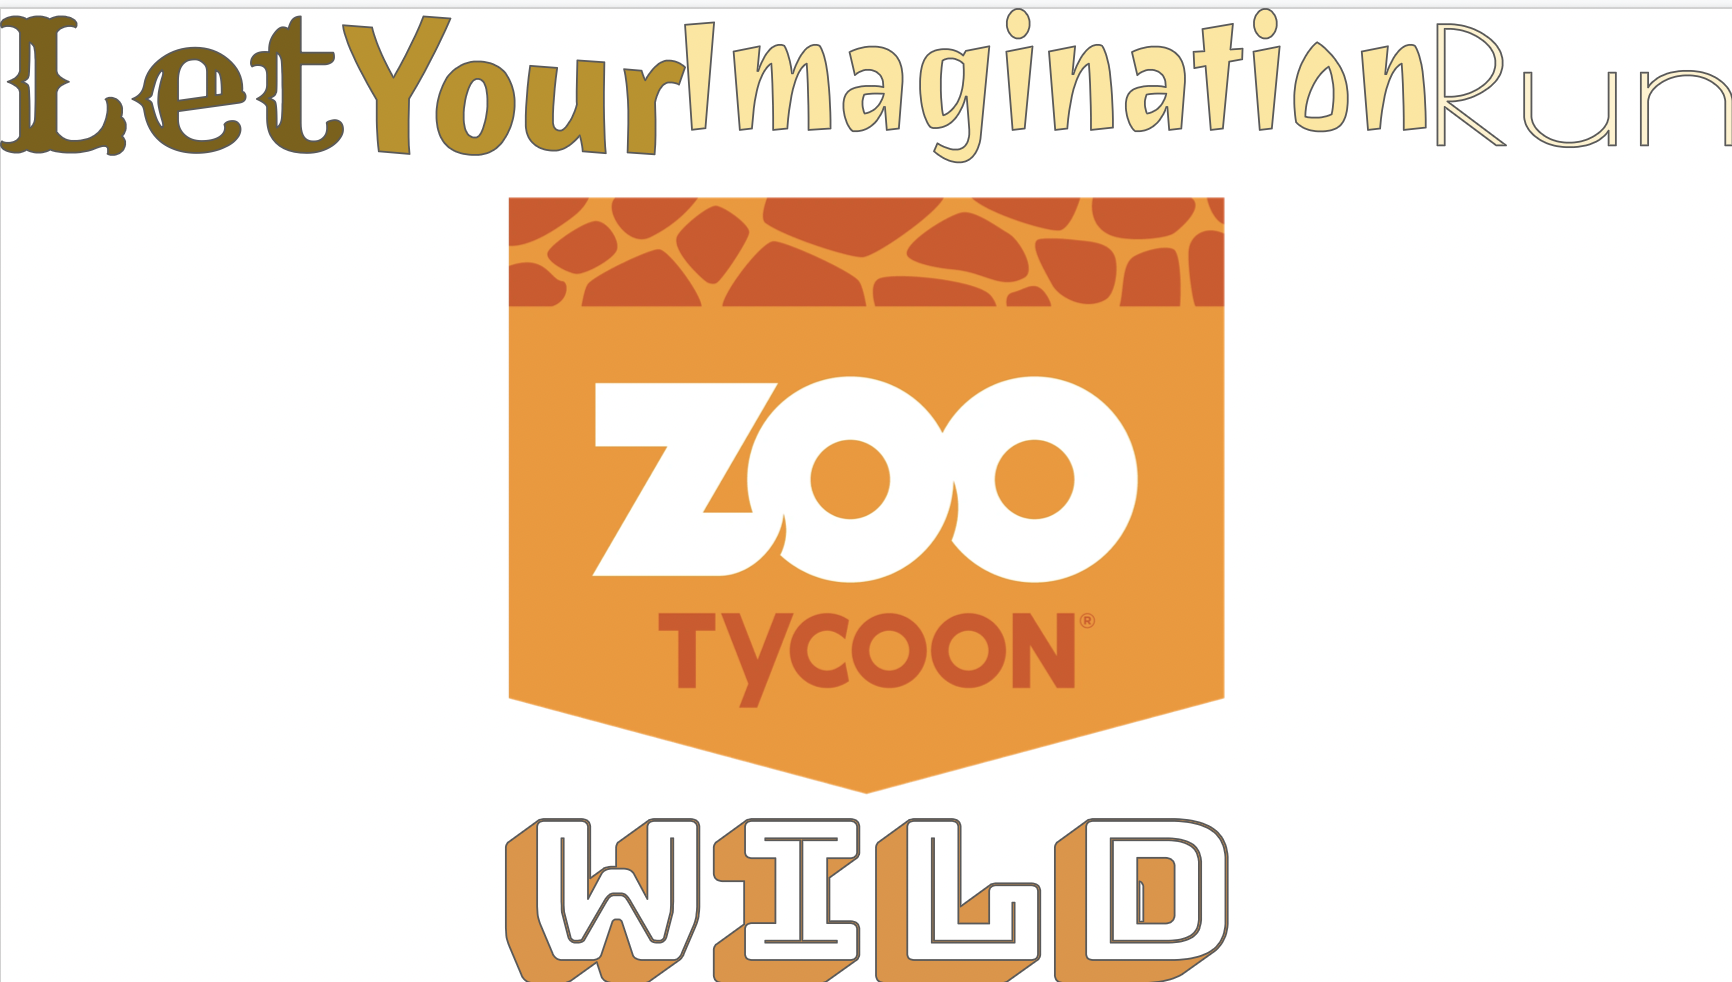 Zoo Tycoon 3, Idea Wiki